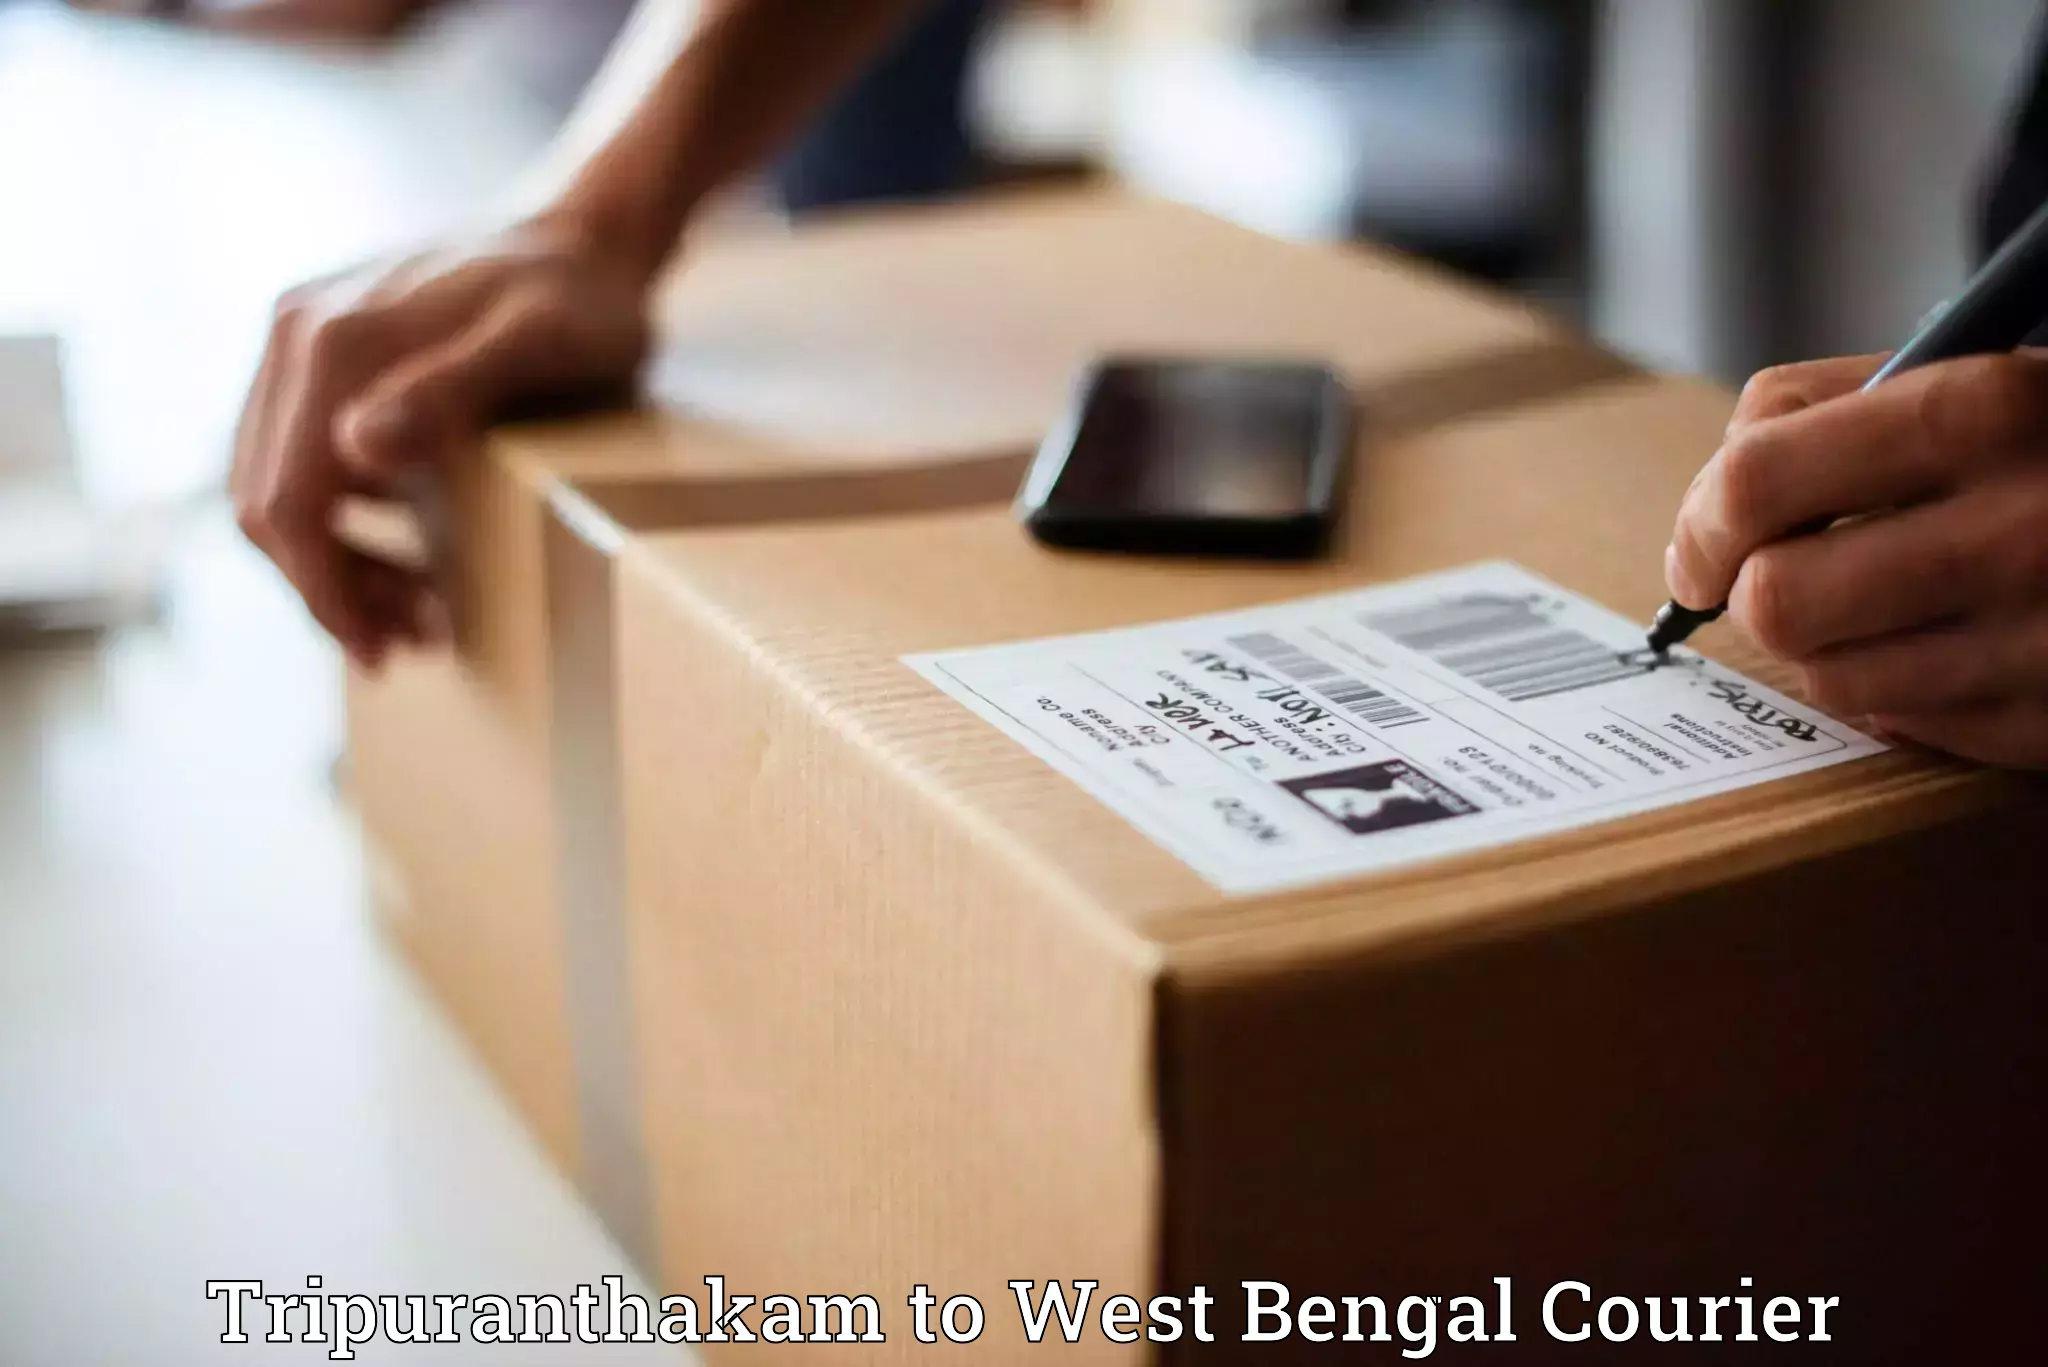 Supply chain delivery Tripuranthakam to Calcutta University Kolkata